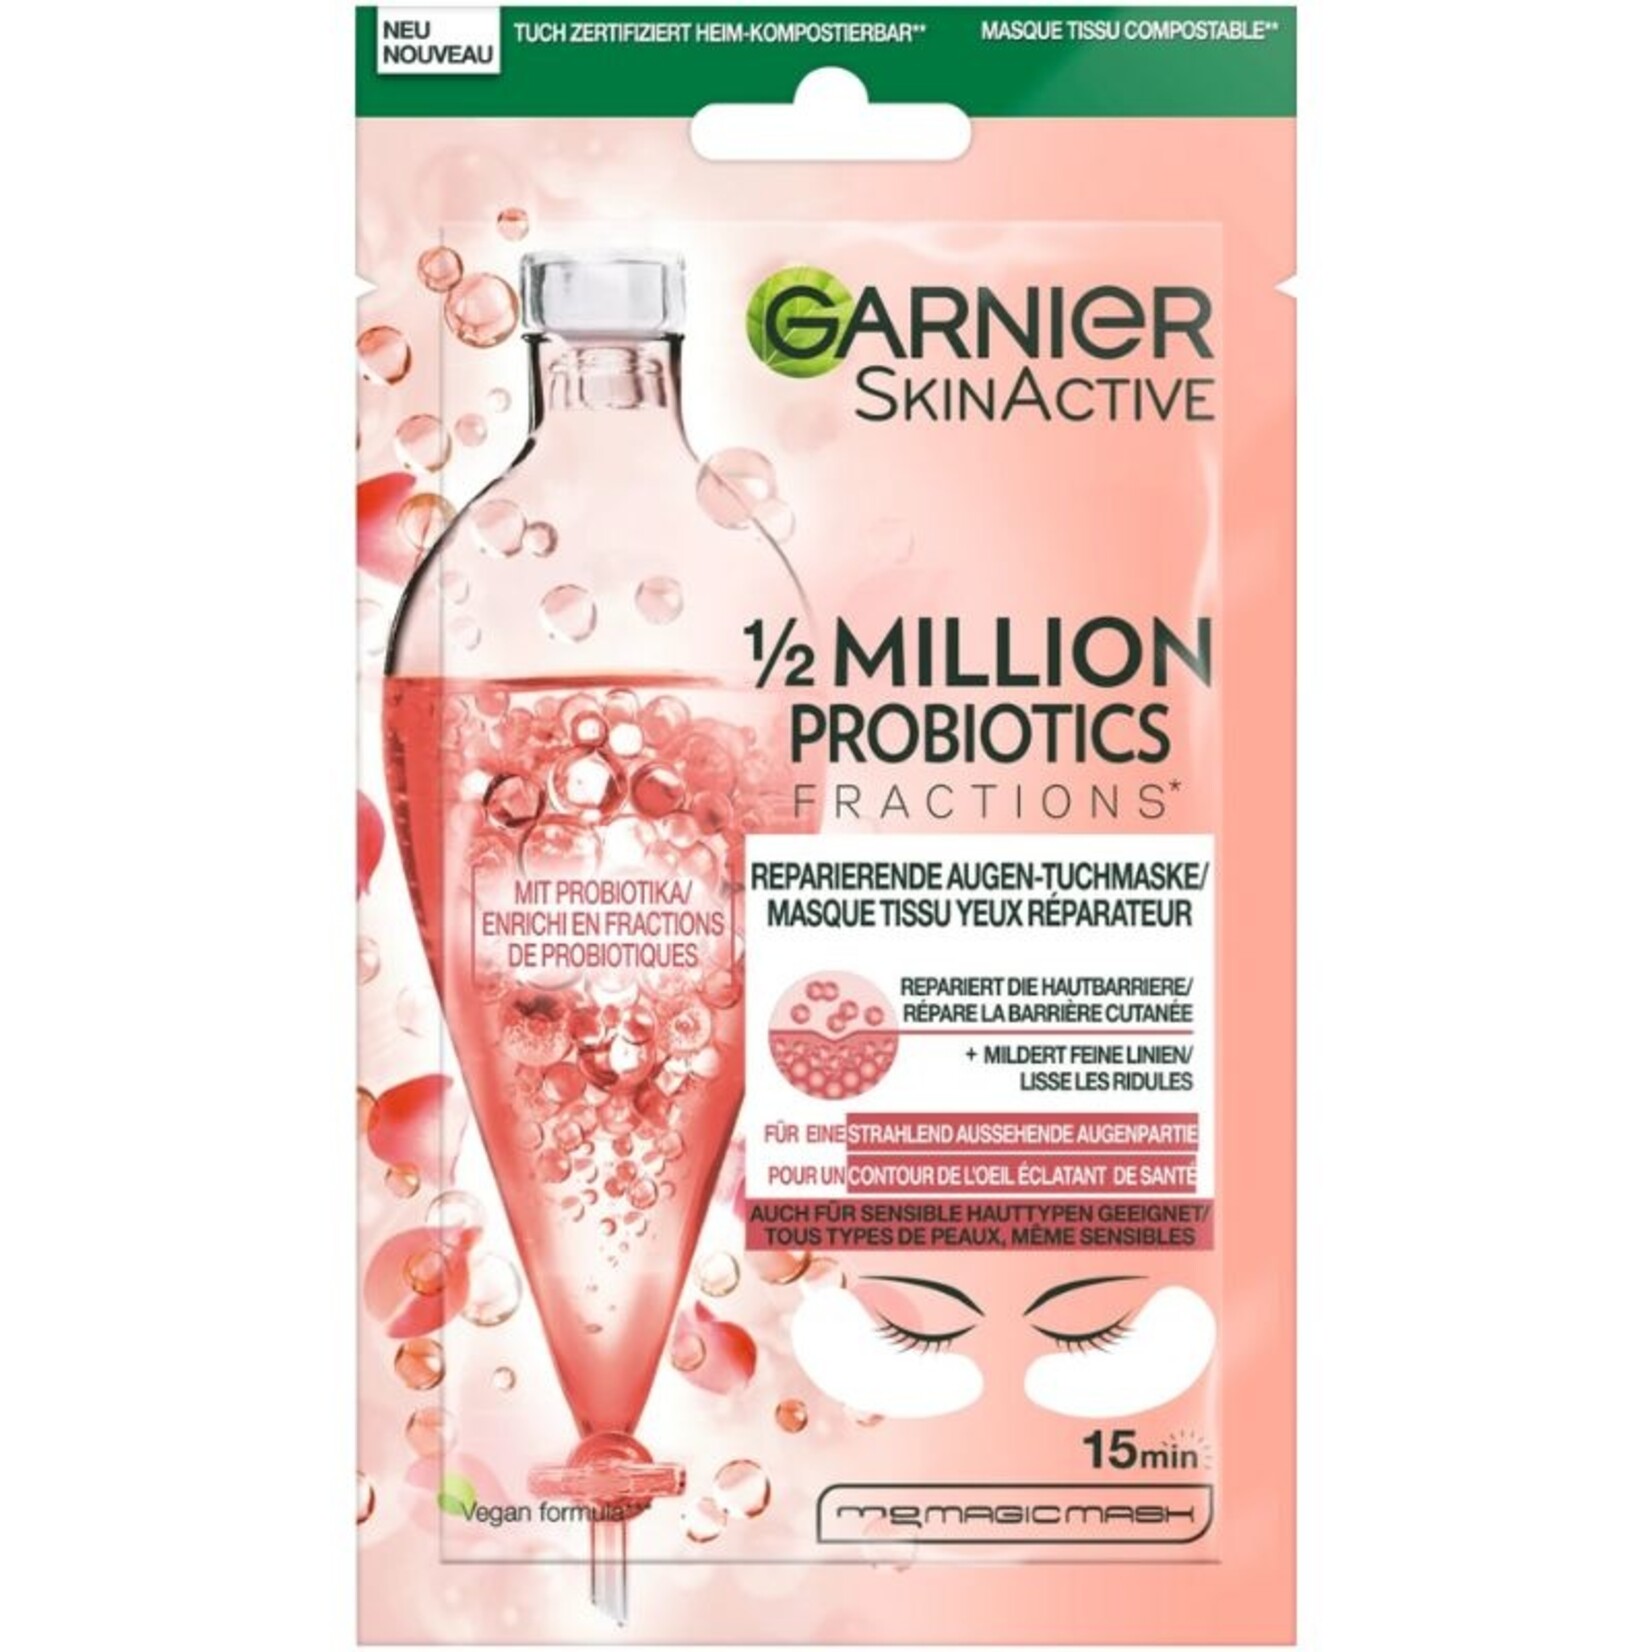 Garnier SkinActive - Augentuchmaske 1/2 Million Probiotics